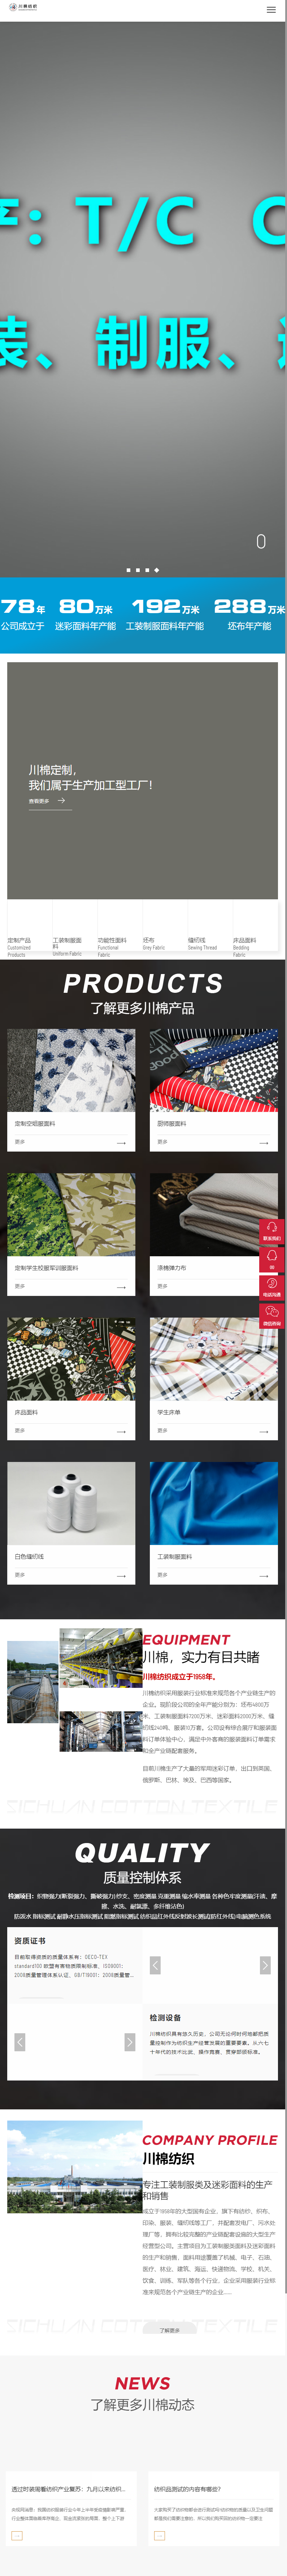 四川川棉纺织有限责任公司网站案例